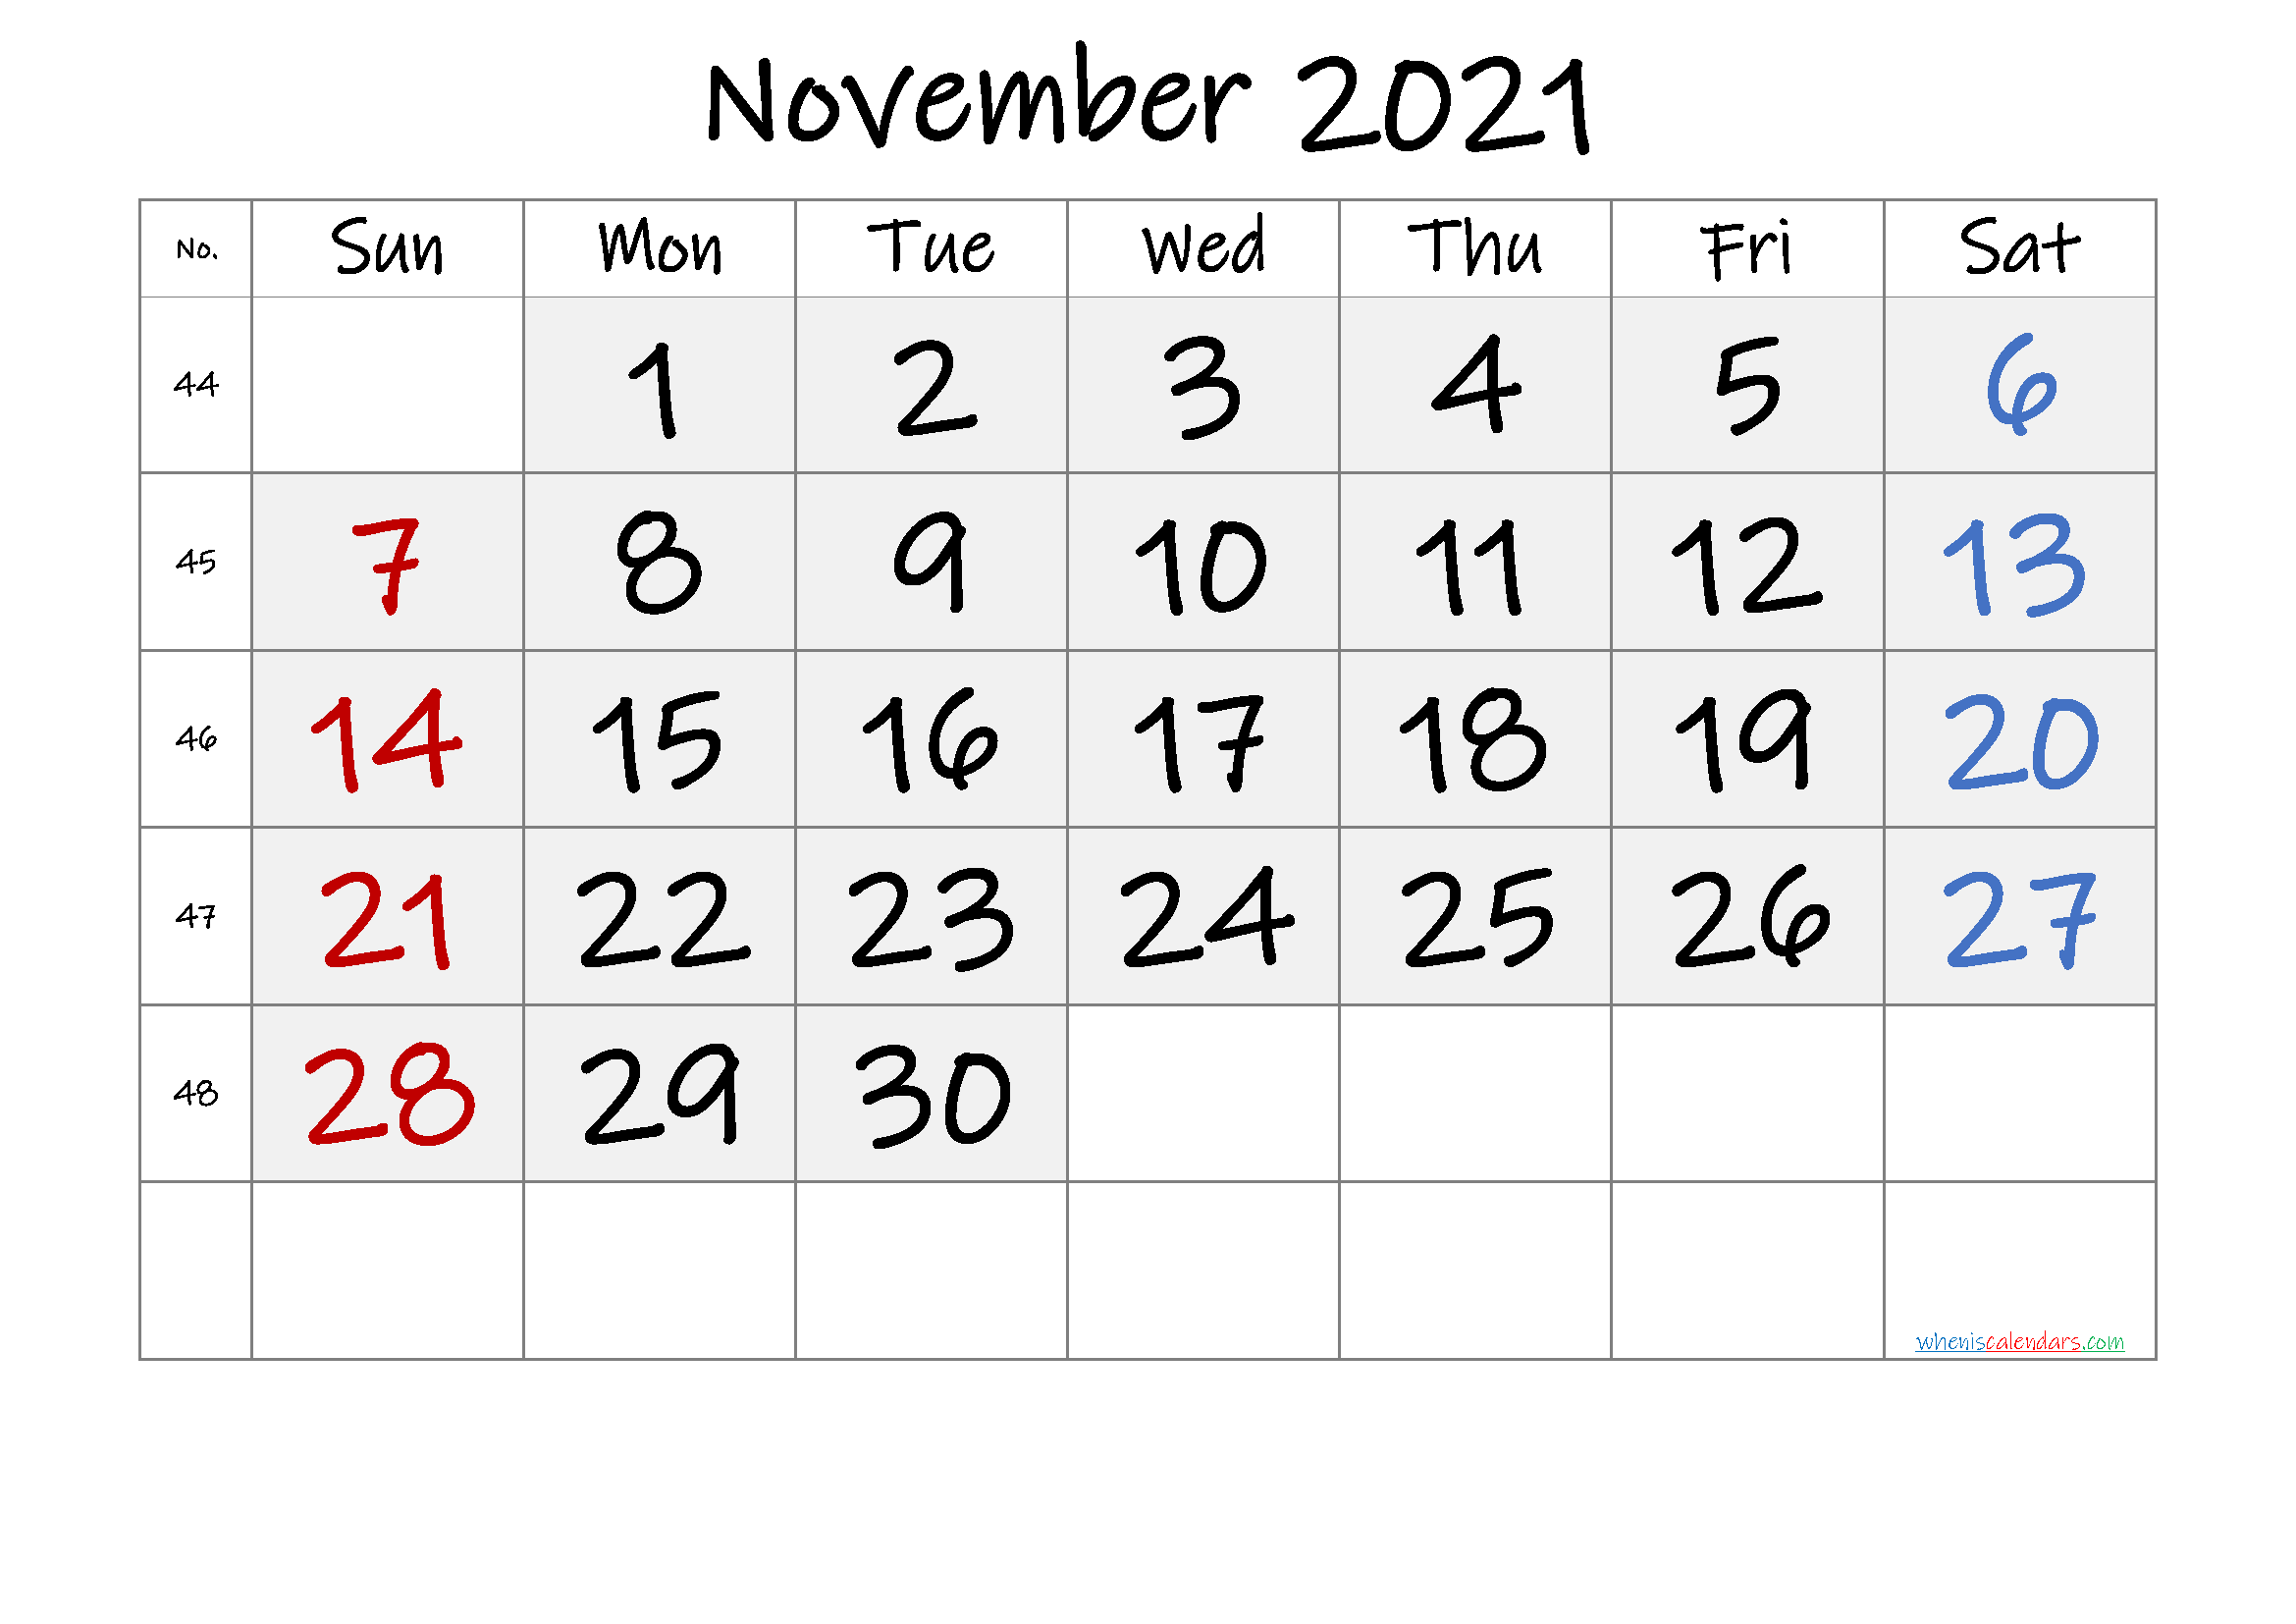 November 2021 Printable Calendar with Week Numbers - 6 ...